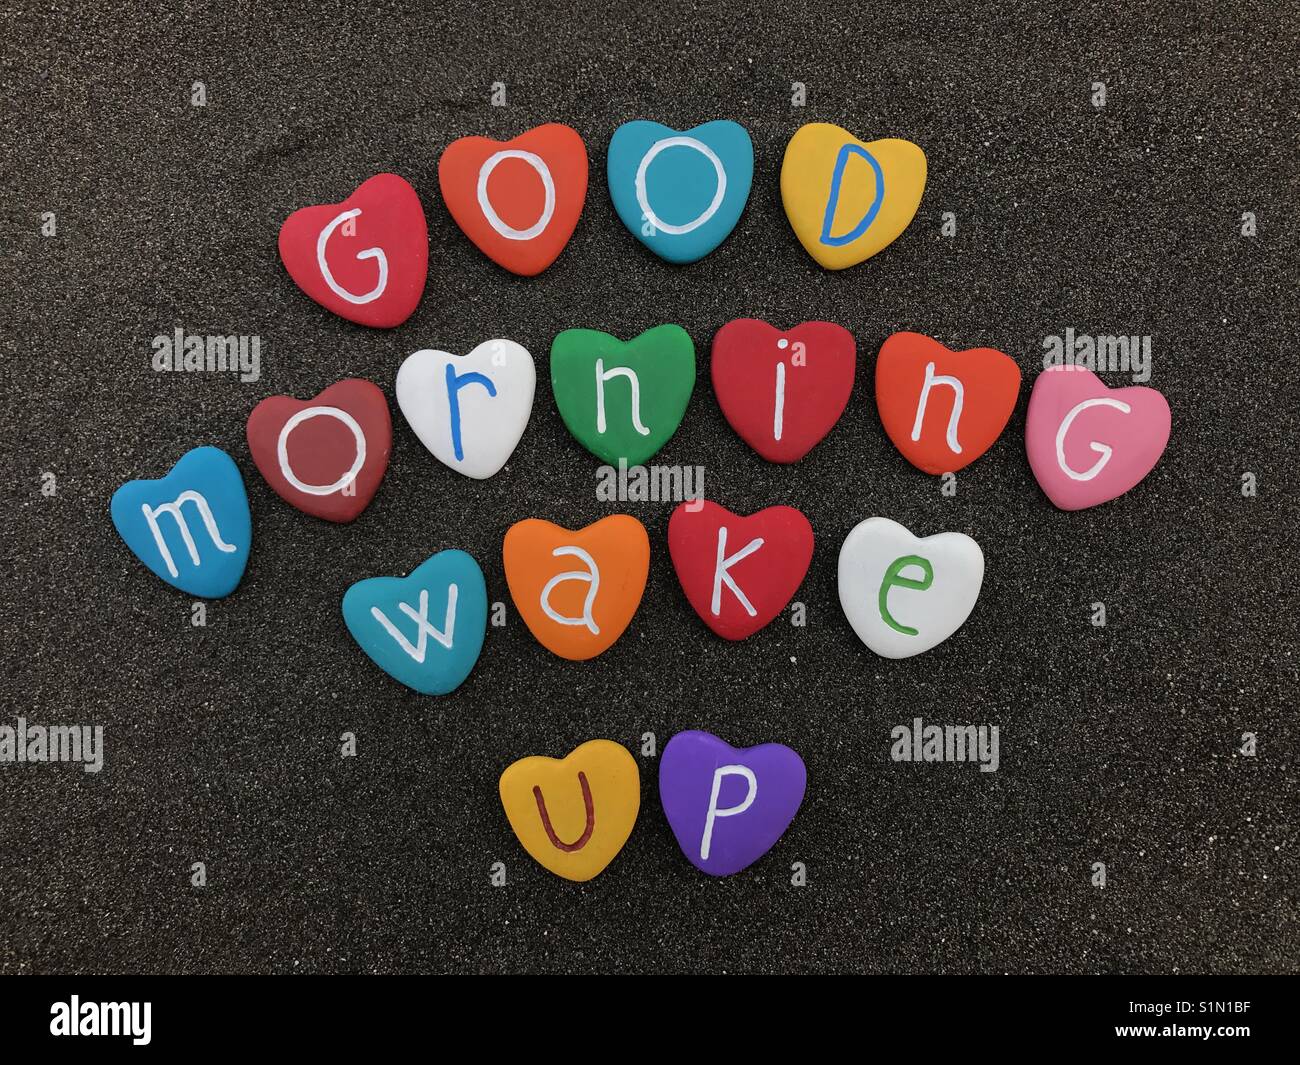 Good morning, wake up Stock Photo - Alamy